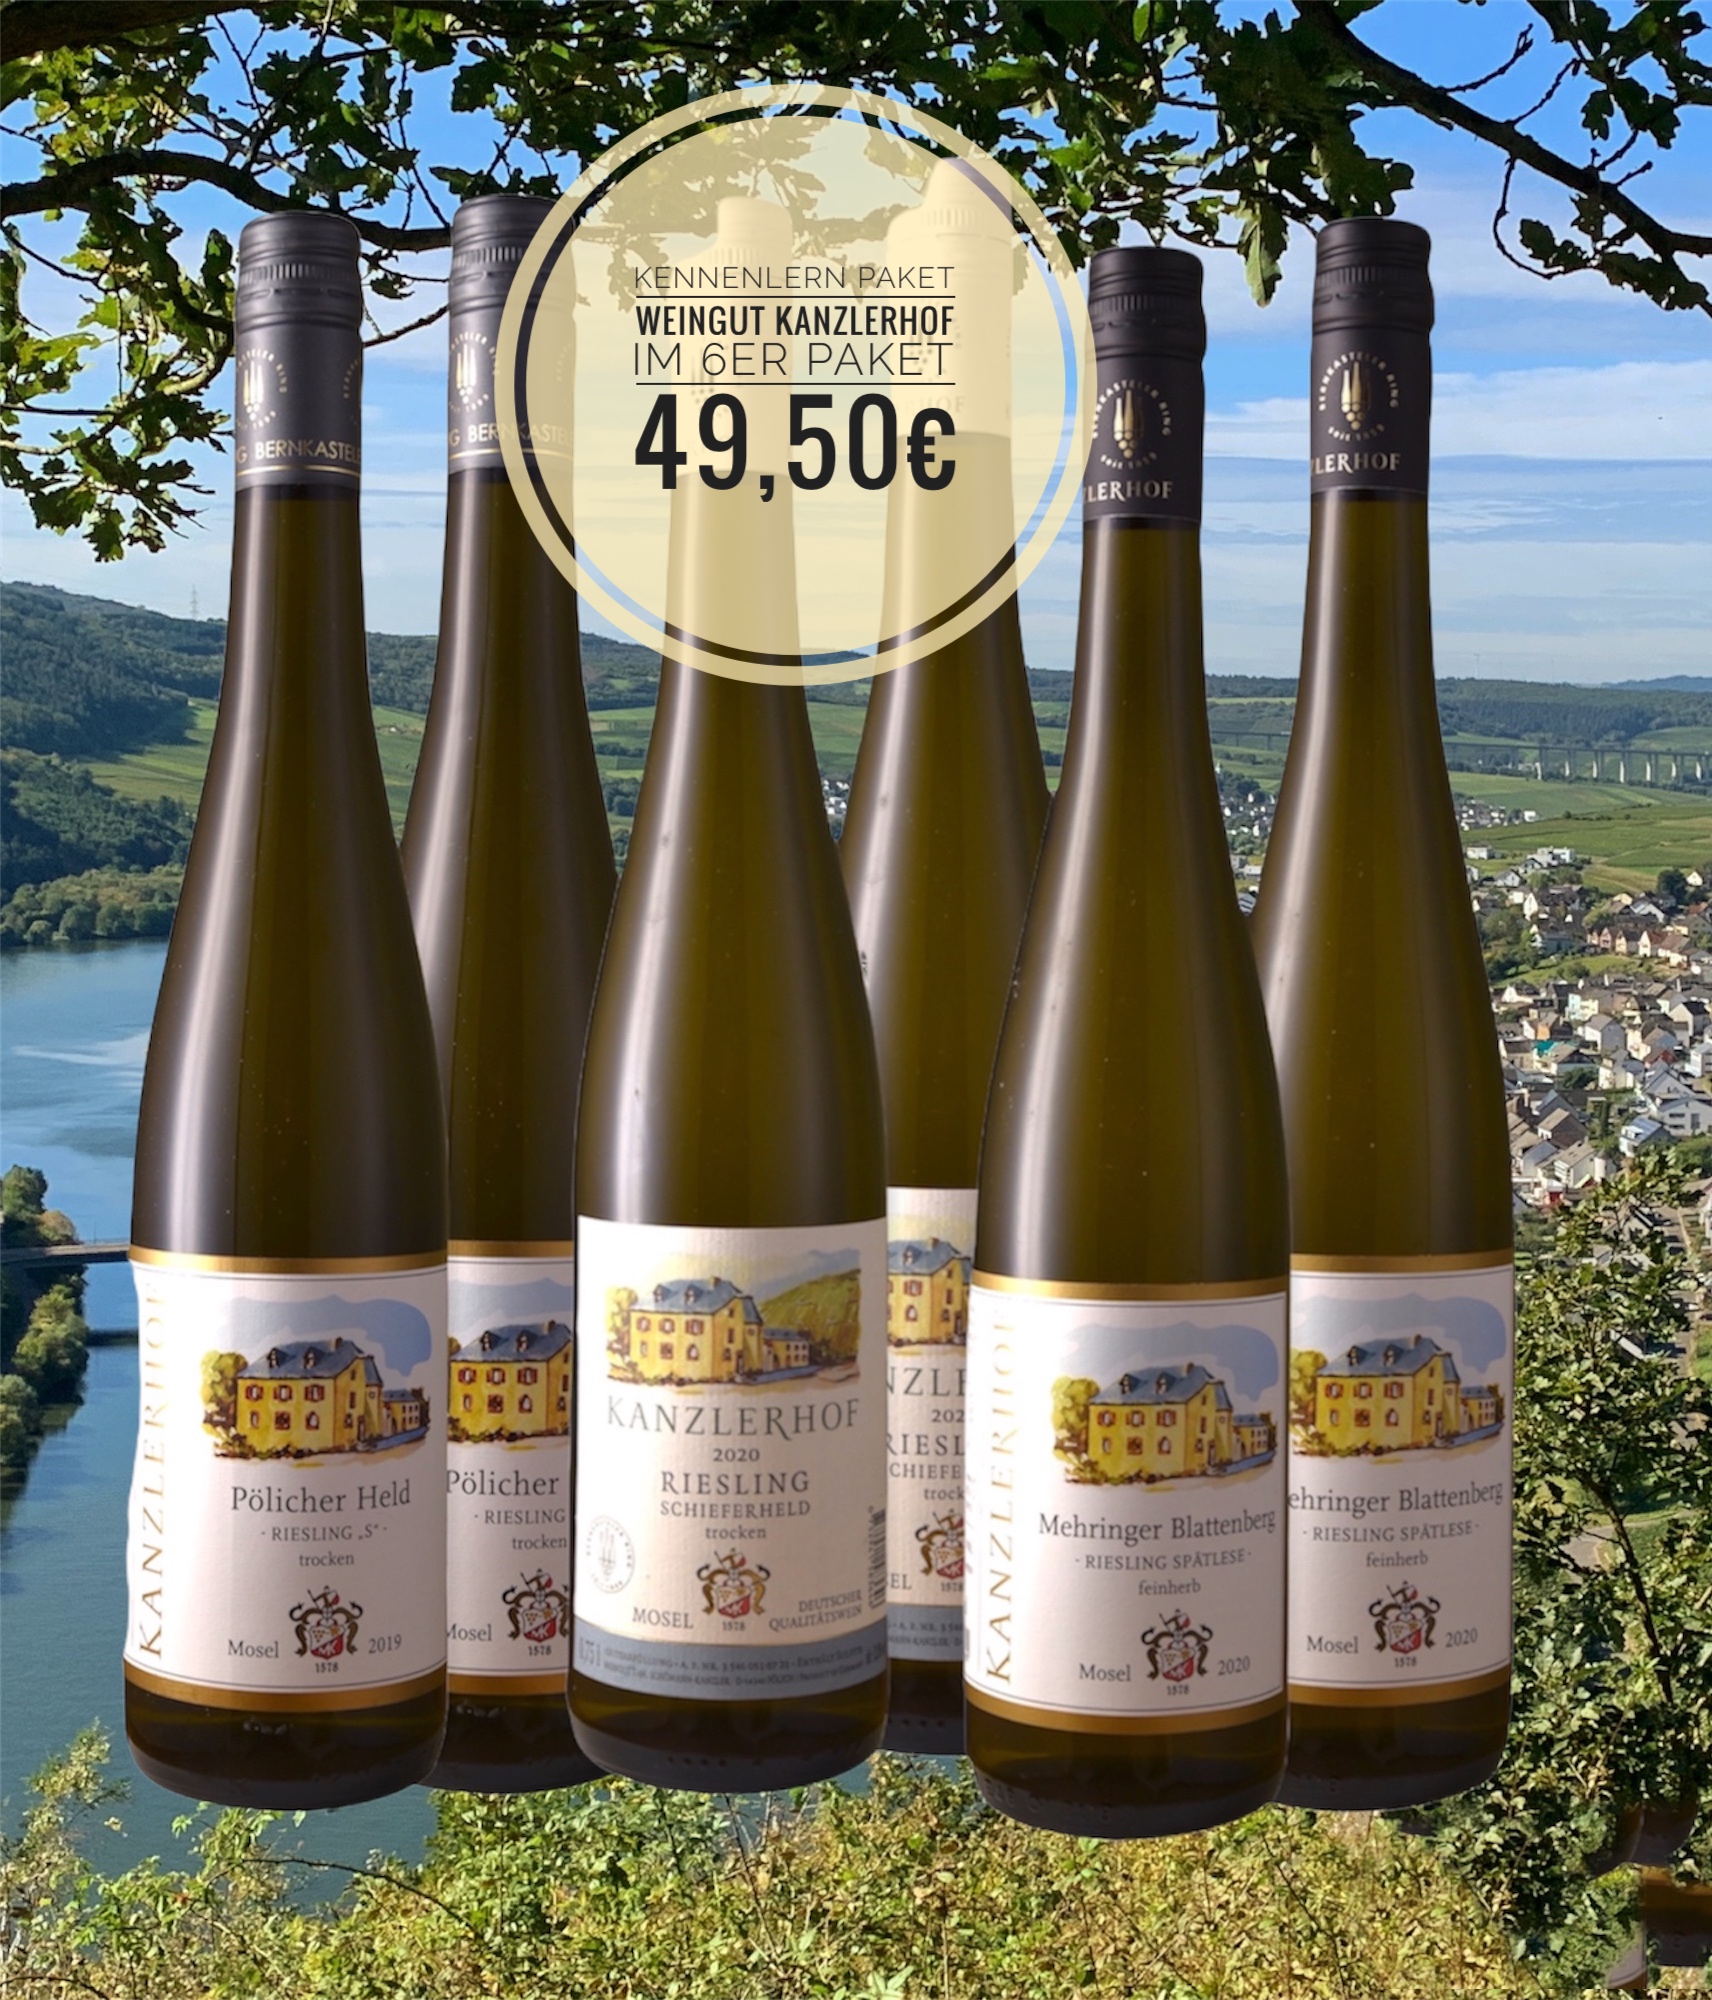 Kennenlern-Paket Weingut Kanzlerhof